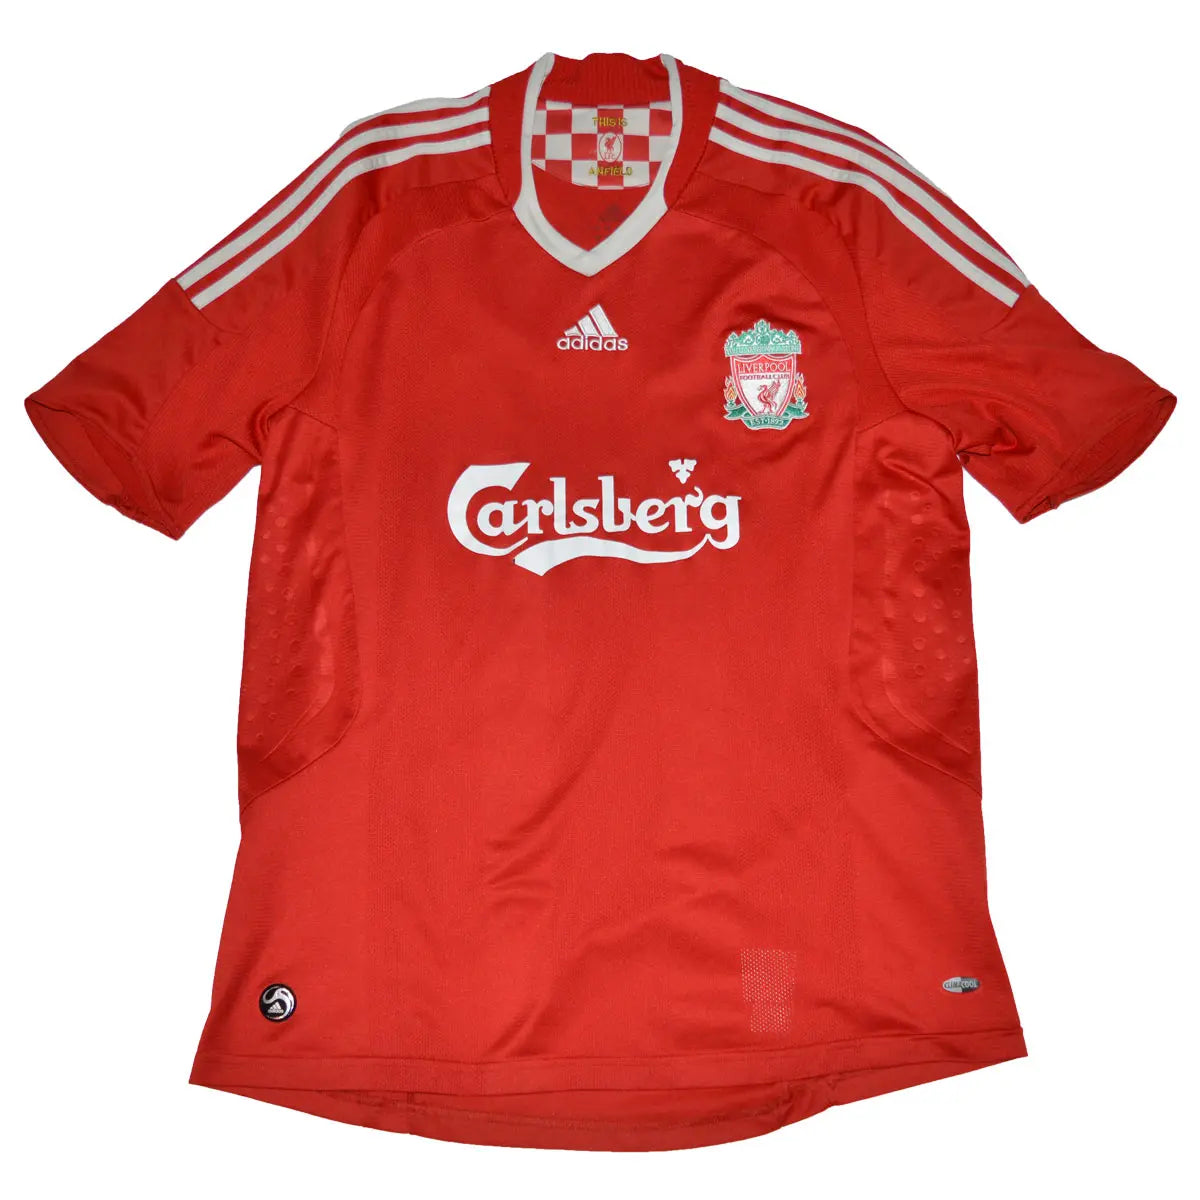 Maillot de foot rétro/vintage authentique rouge domicile adidas Liverpool 2008-2009 Gerrard